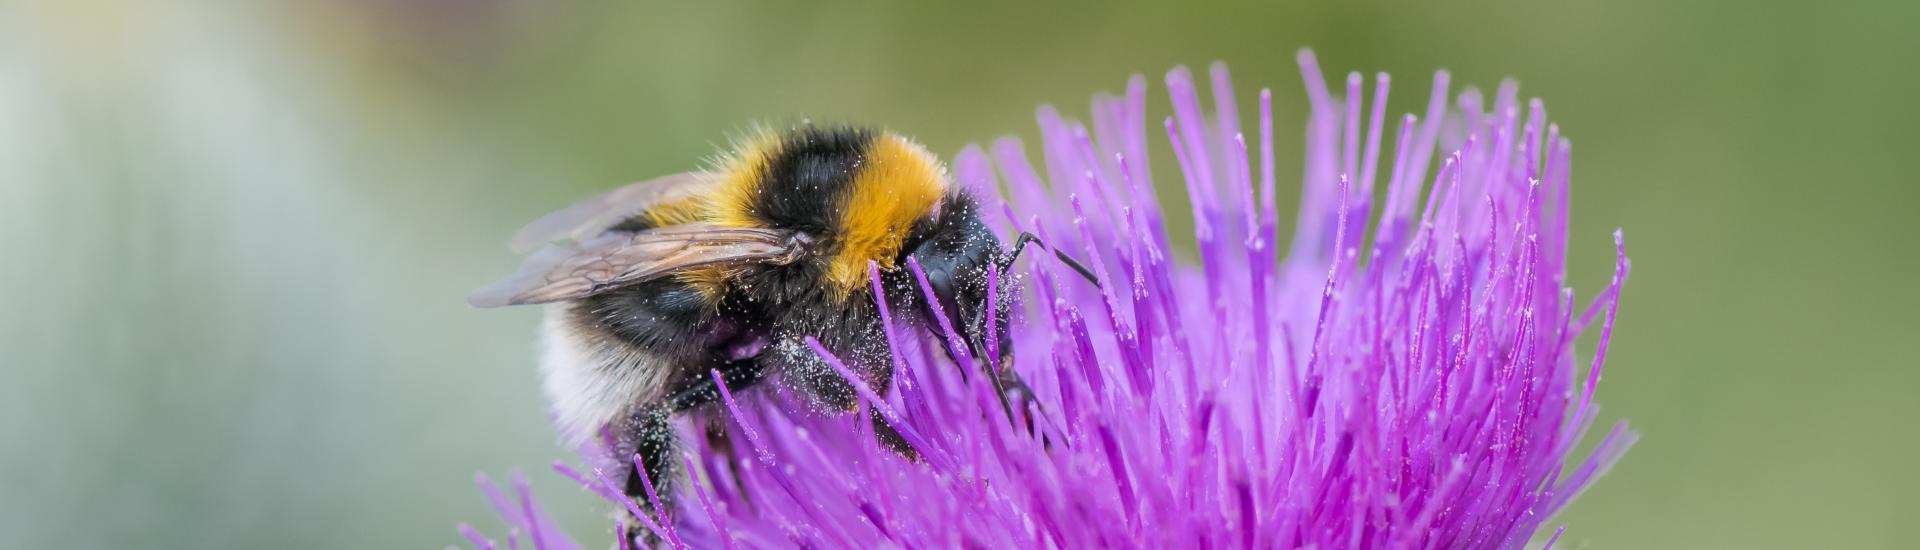 A garden bumblebee sat on a purple flower